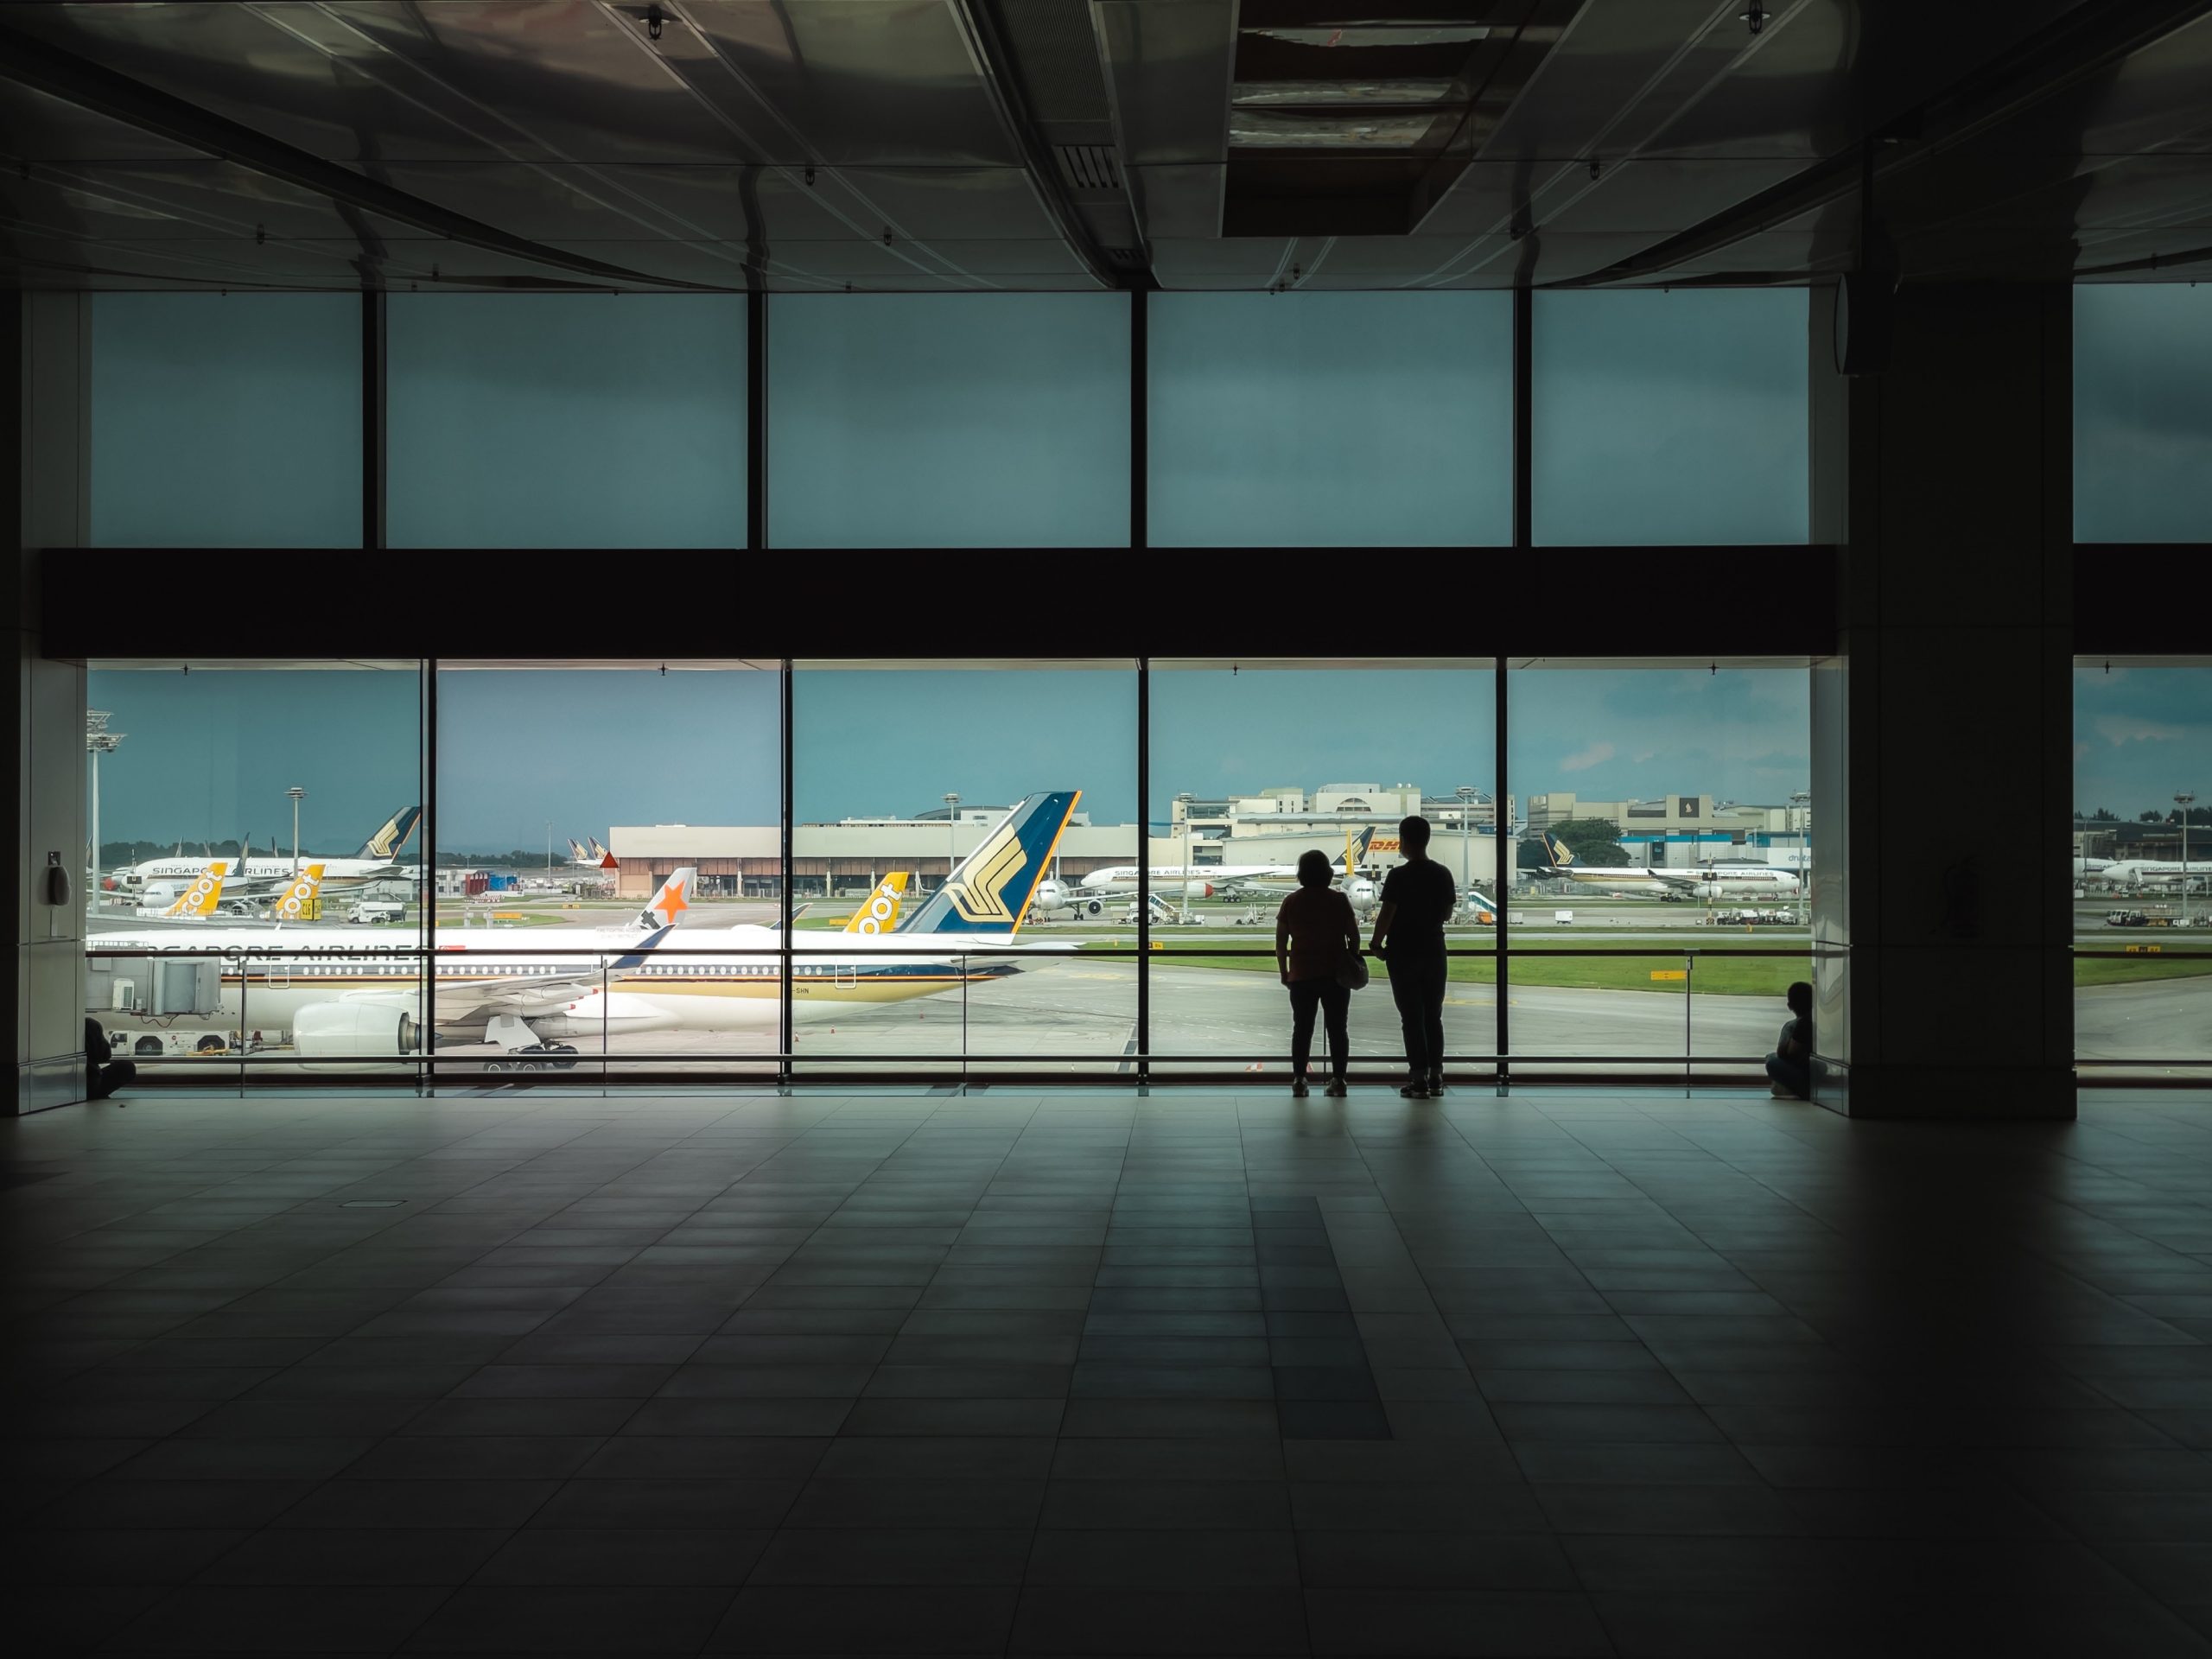 Dos personas contemplando un avión en un aeropuerto.